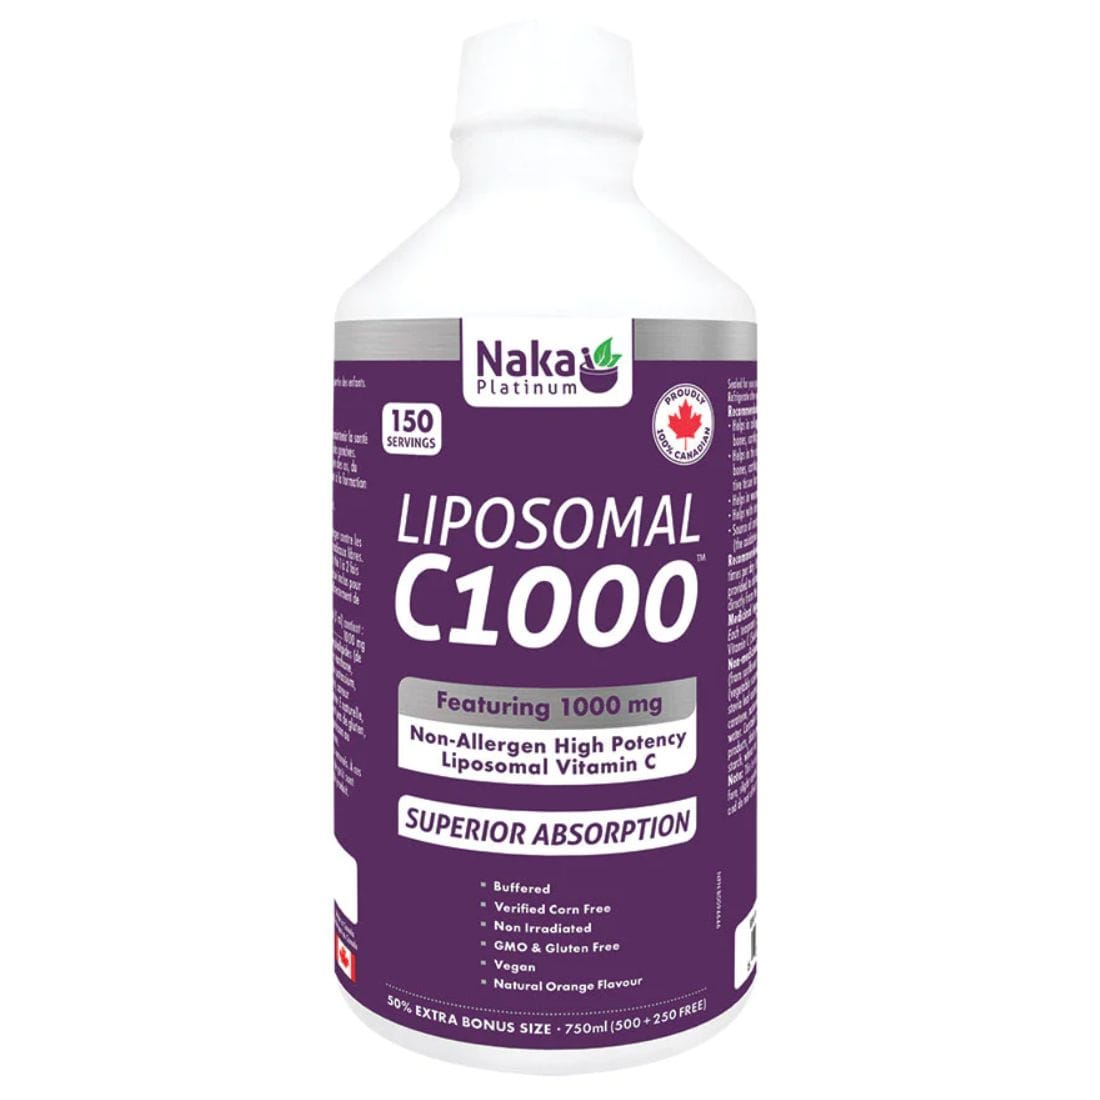 Naka Platinum Liposomal Vitamin C 1000mg C1000 Liquid Vitamin C